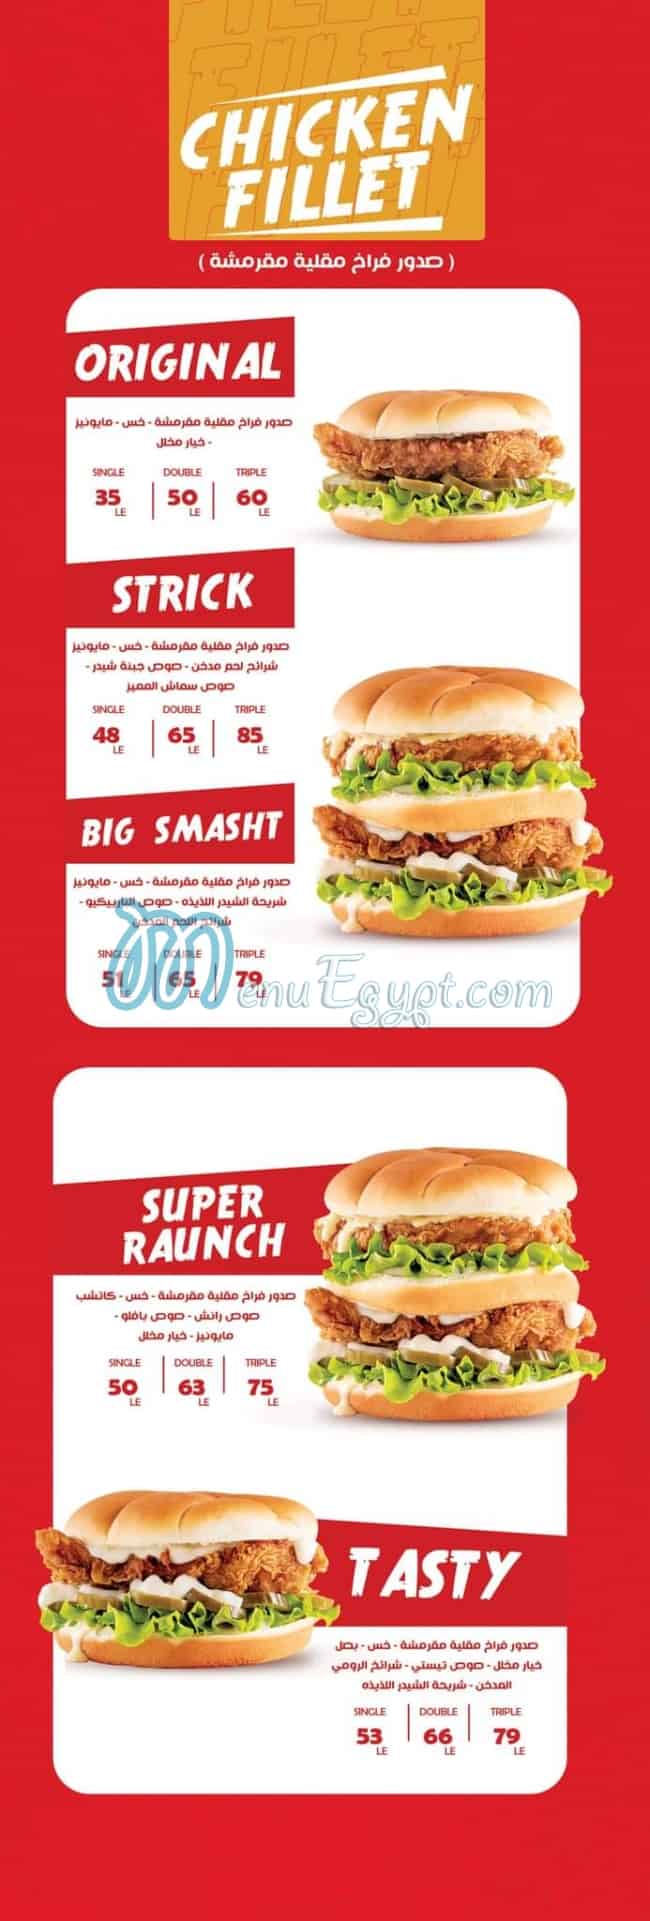 Smasht Burger egypt